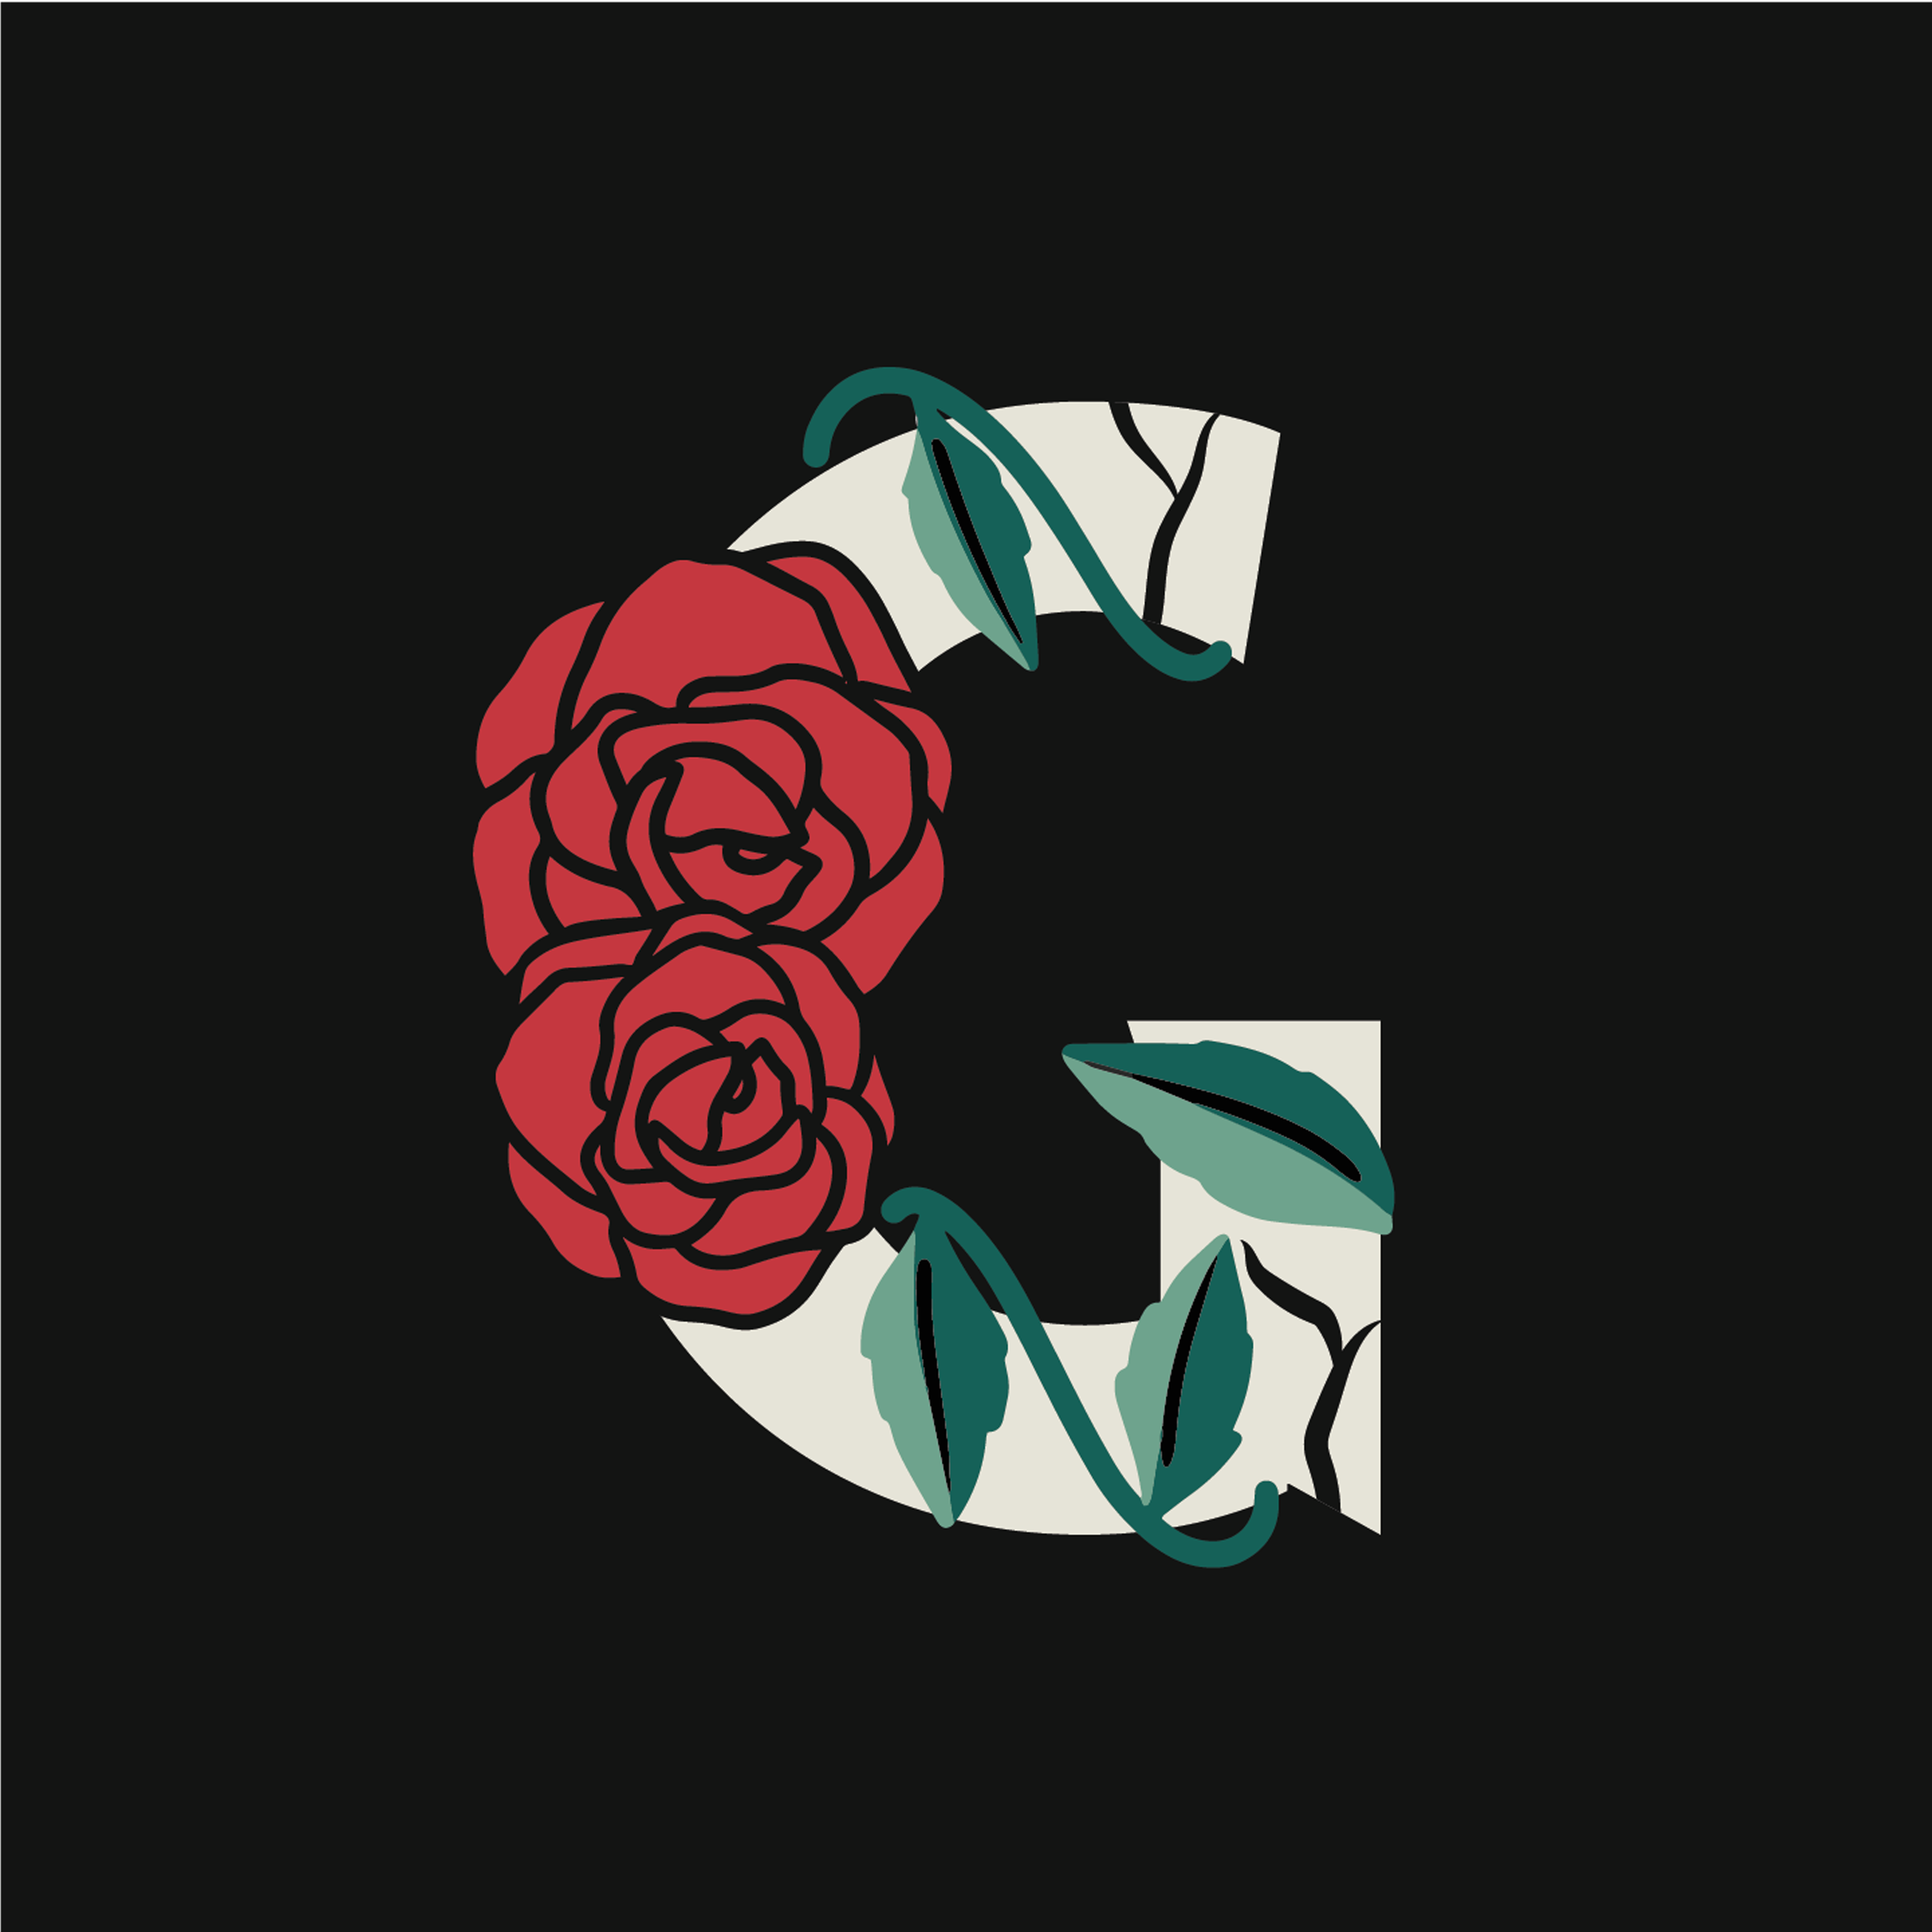 rose-letter-g-design-theme